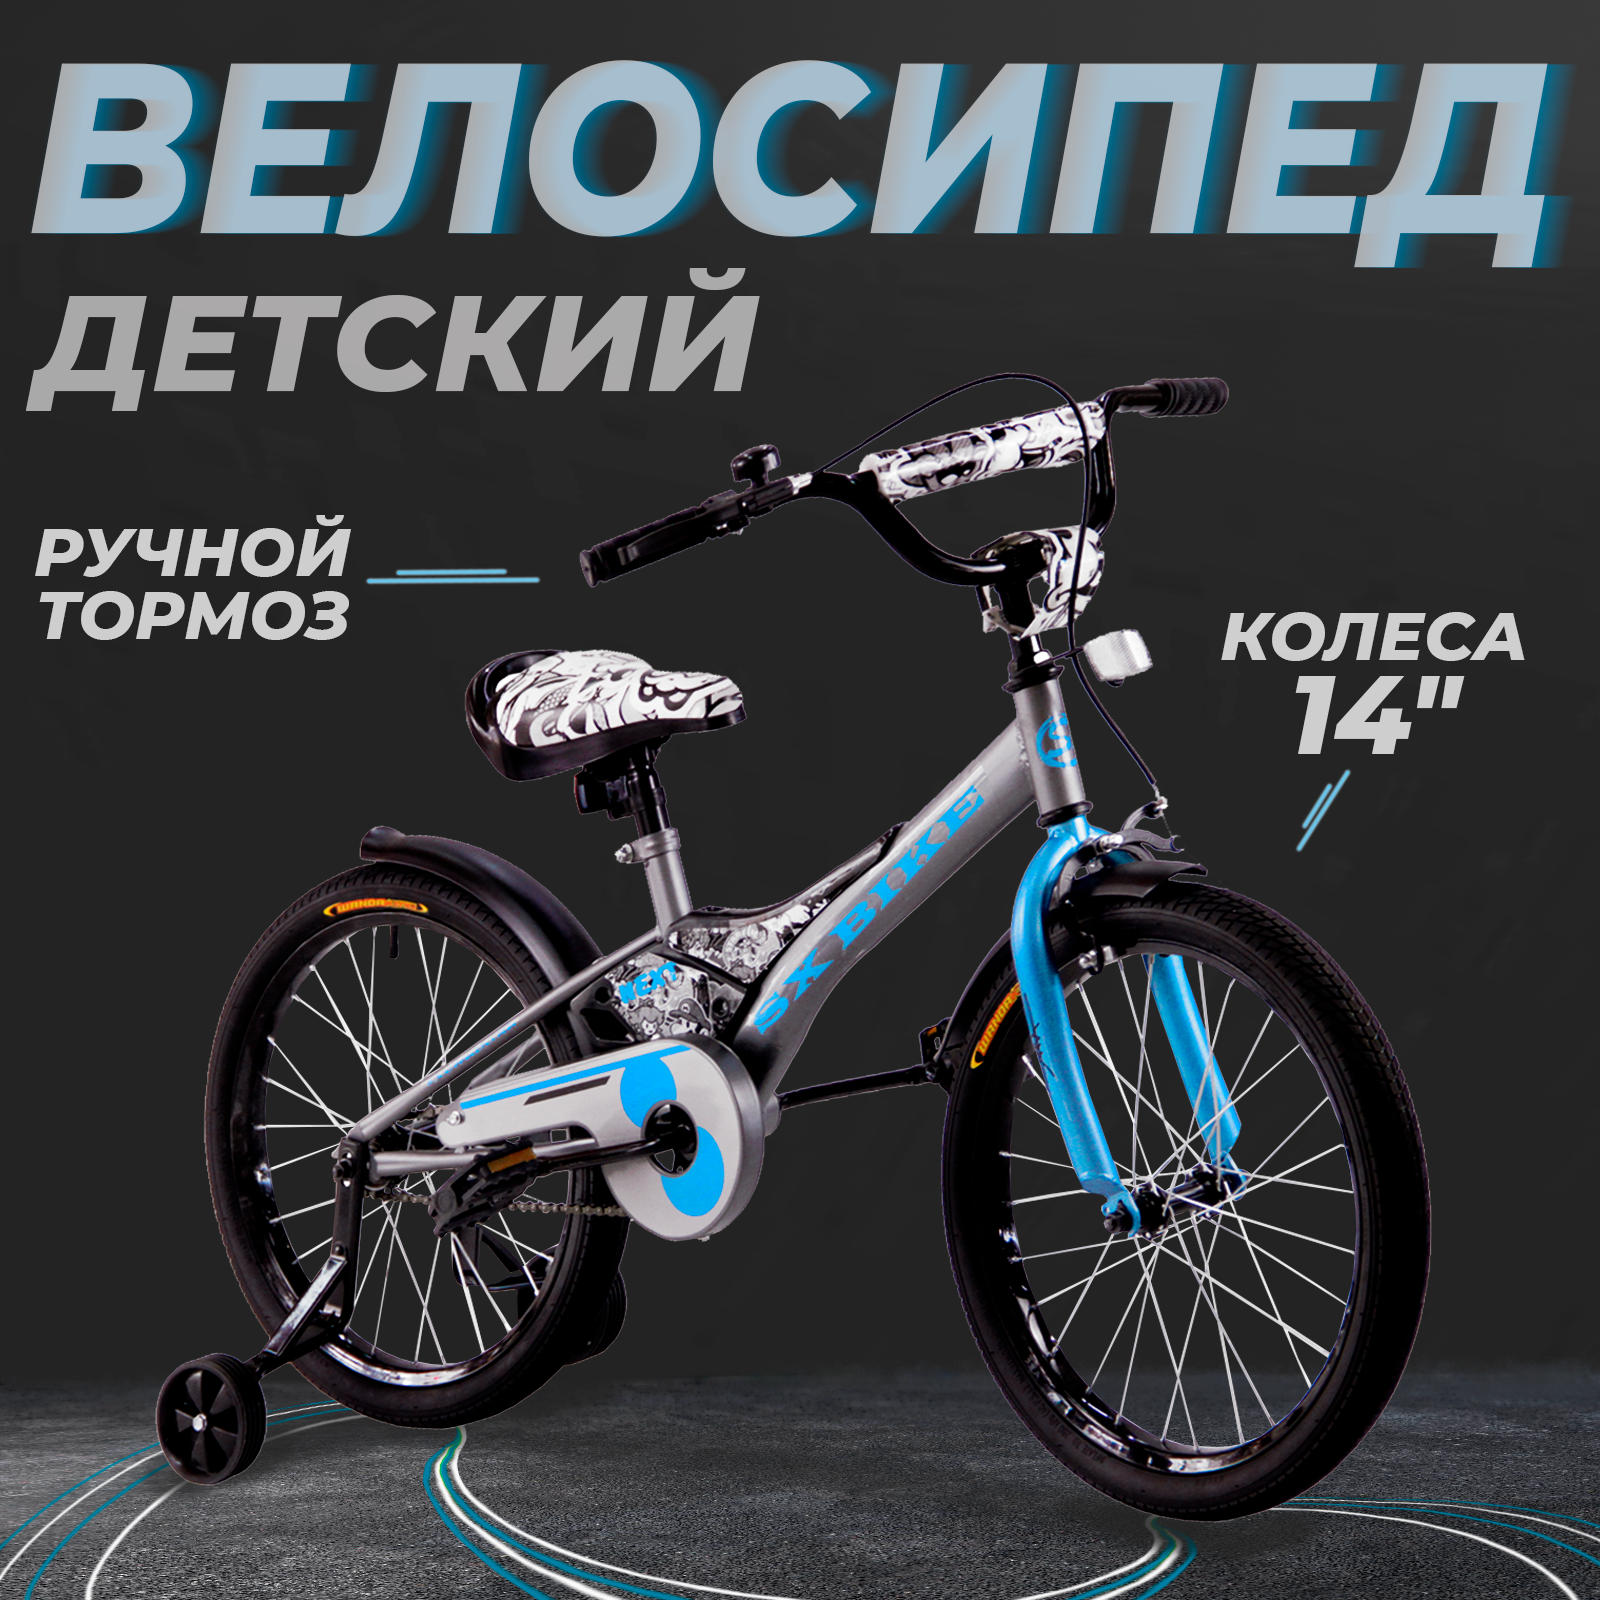 Велосипед детский 14" Next 2.0 серебристый, руч. тормоз, доп.колеса